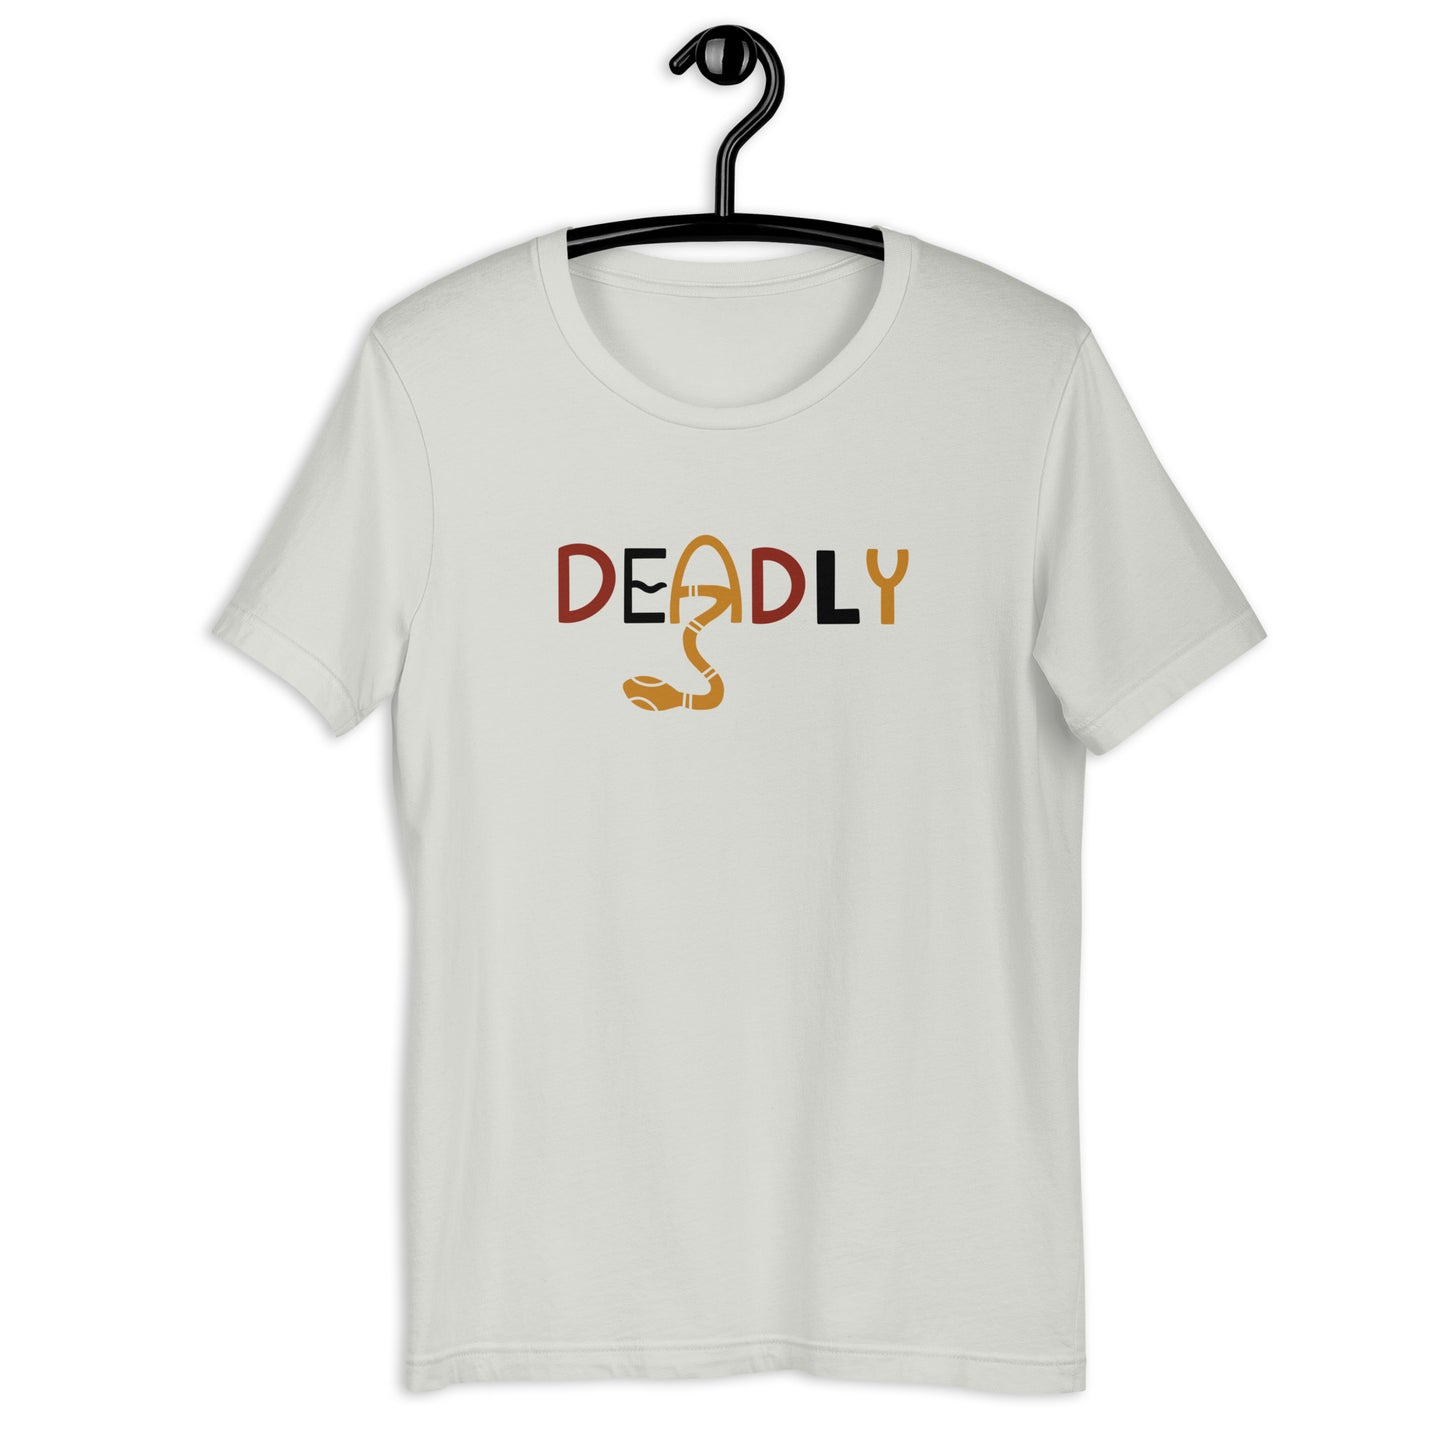 Deadly Plus Size T-Shirt (Unisex)